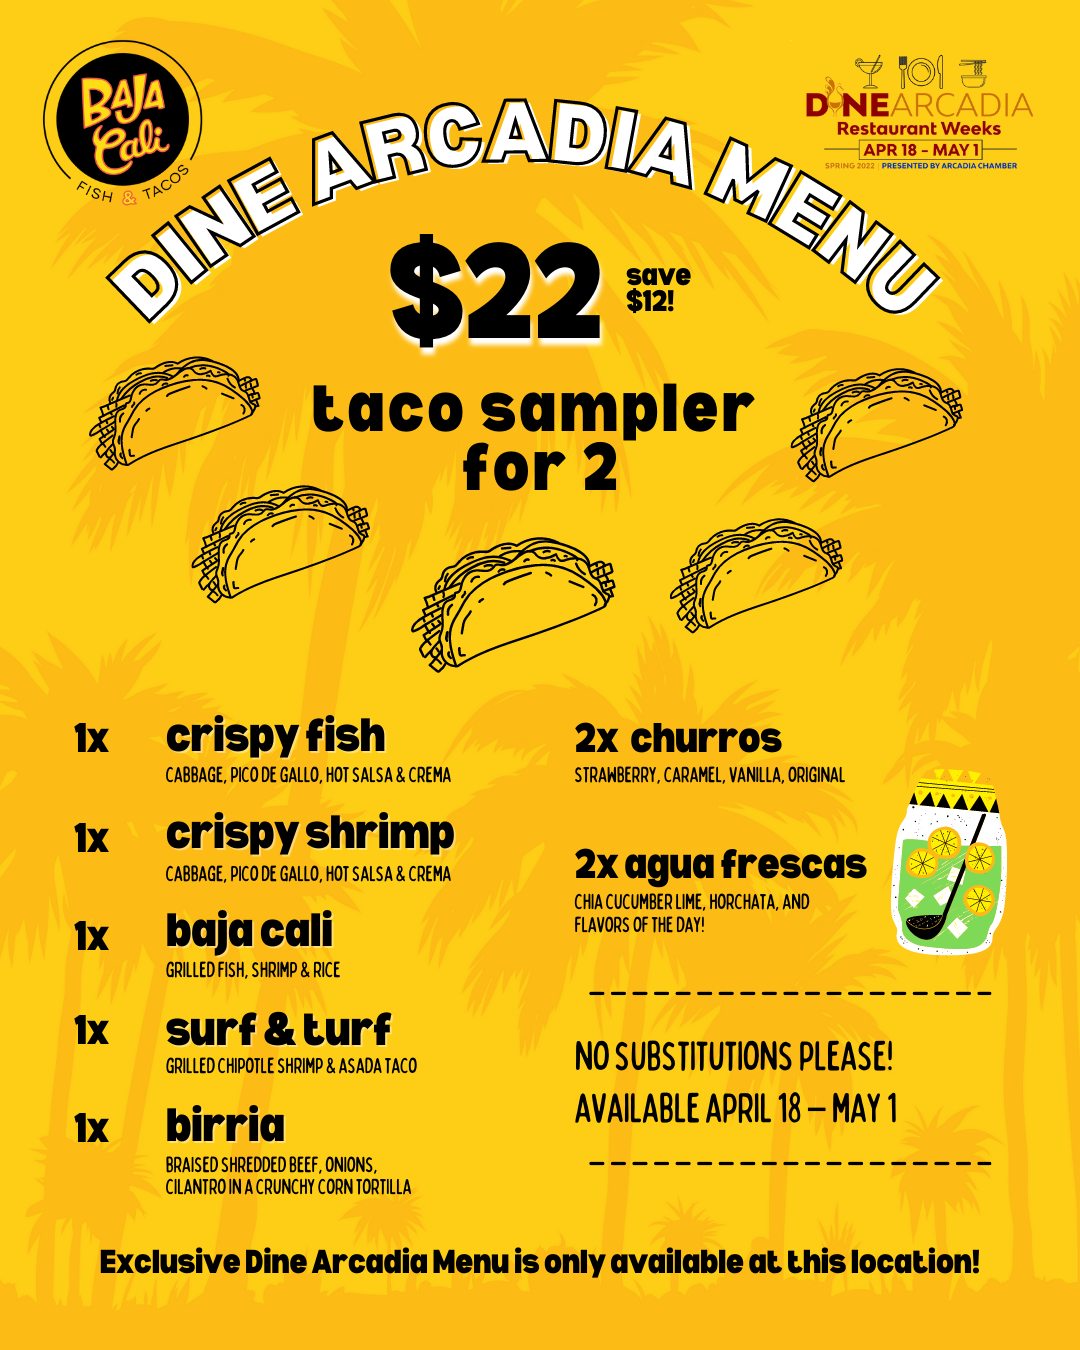 Baja Cali flyer with Dine Arcadia items listed